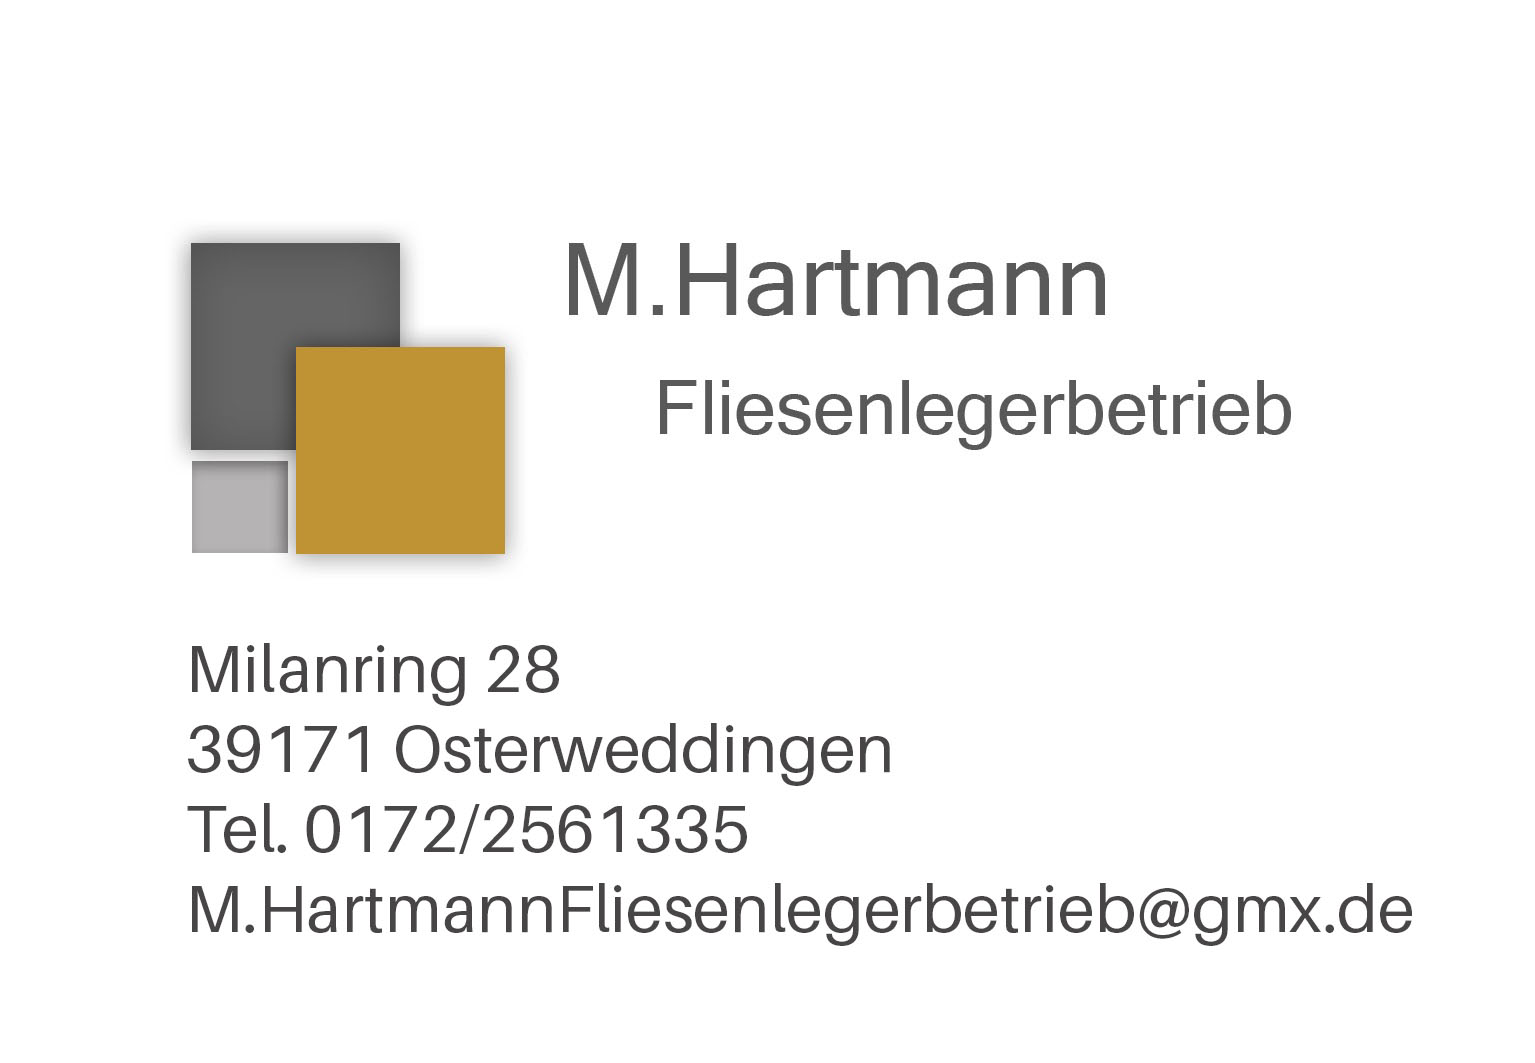 M.Hartmann Fliesenlegerbetrieb